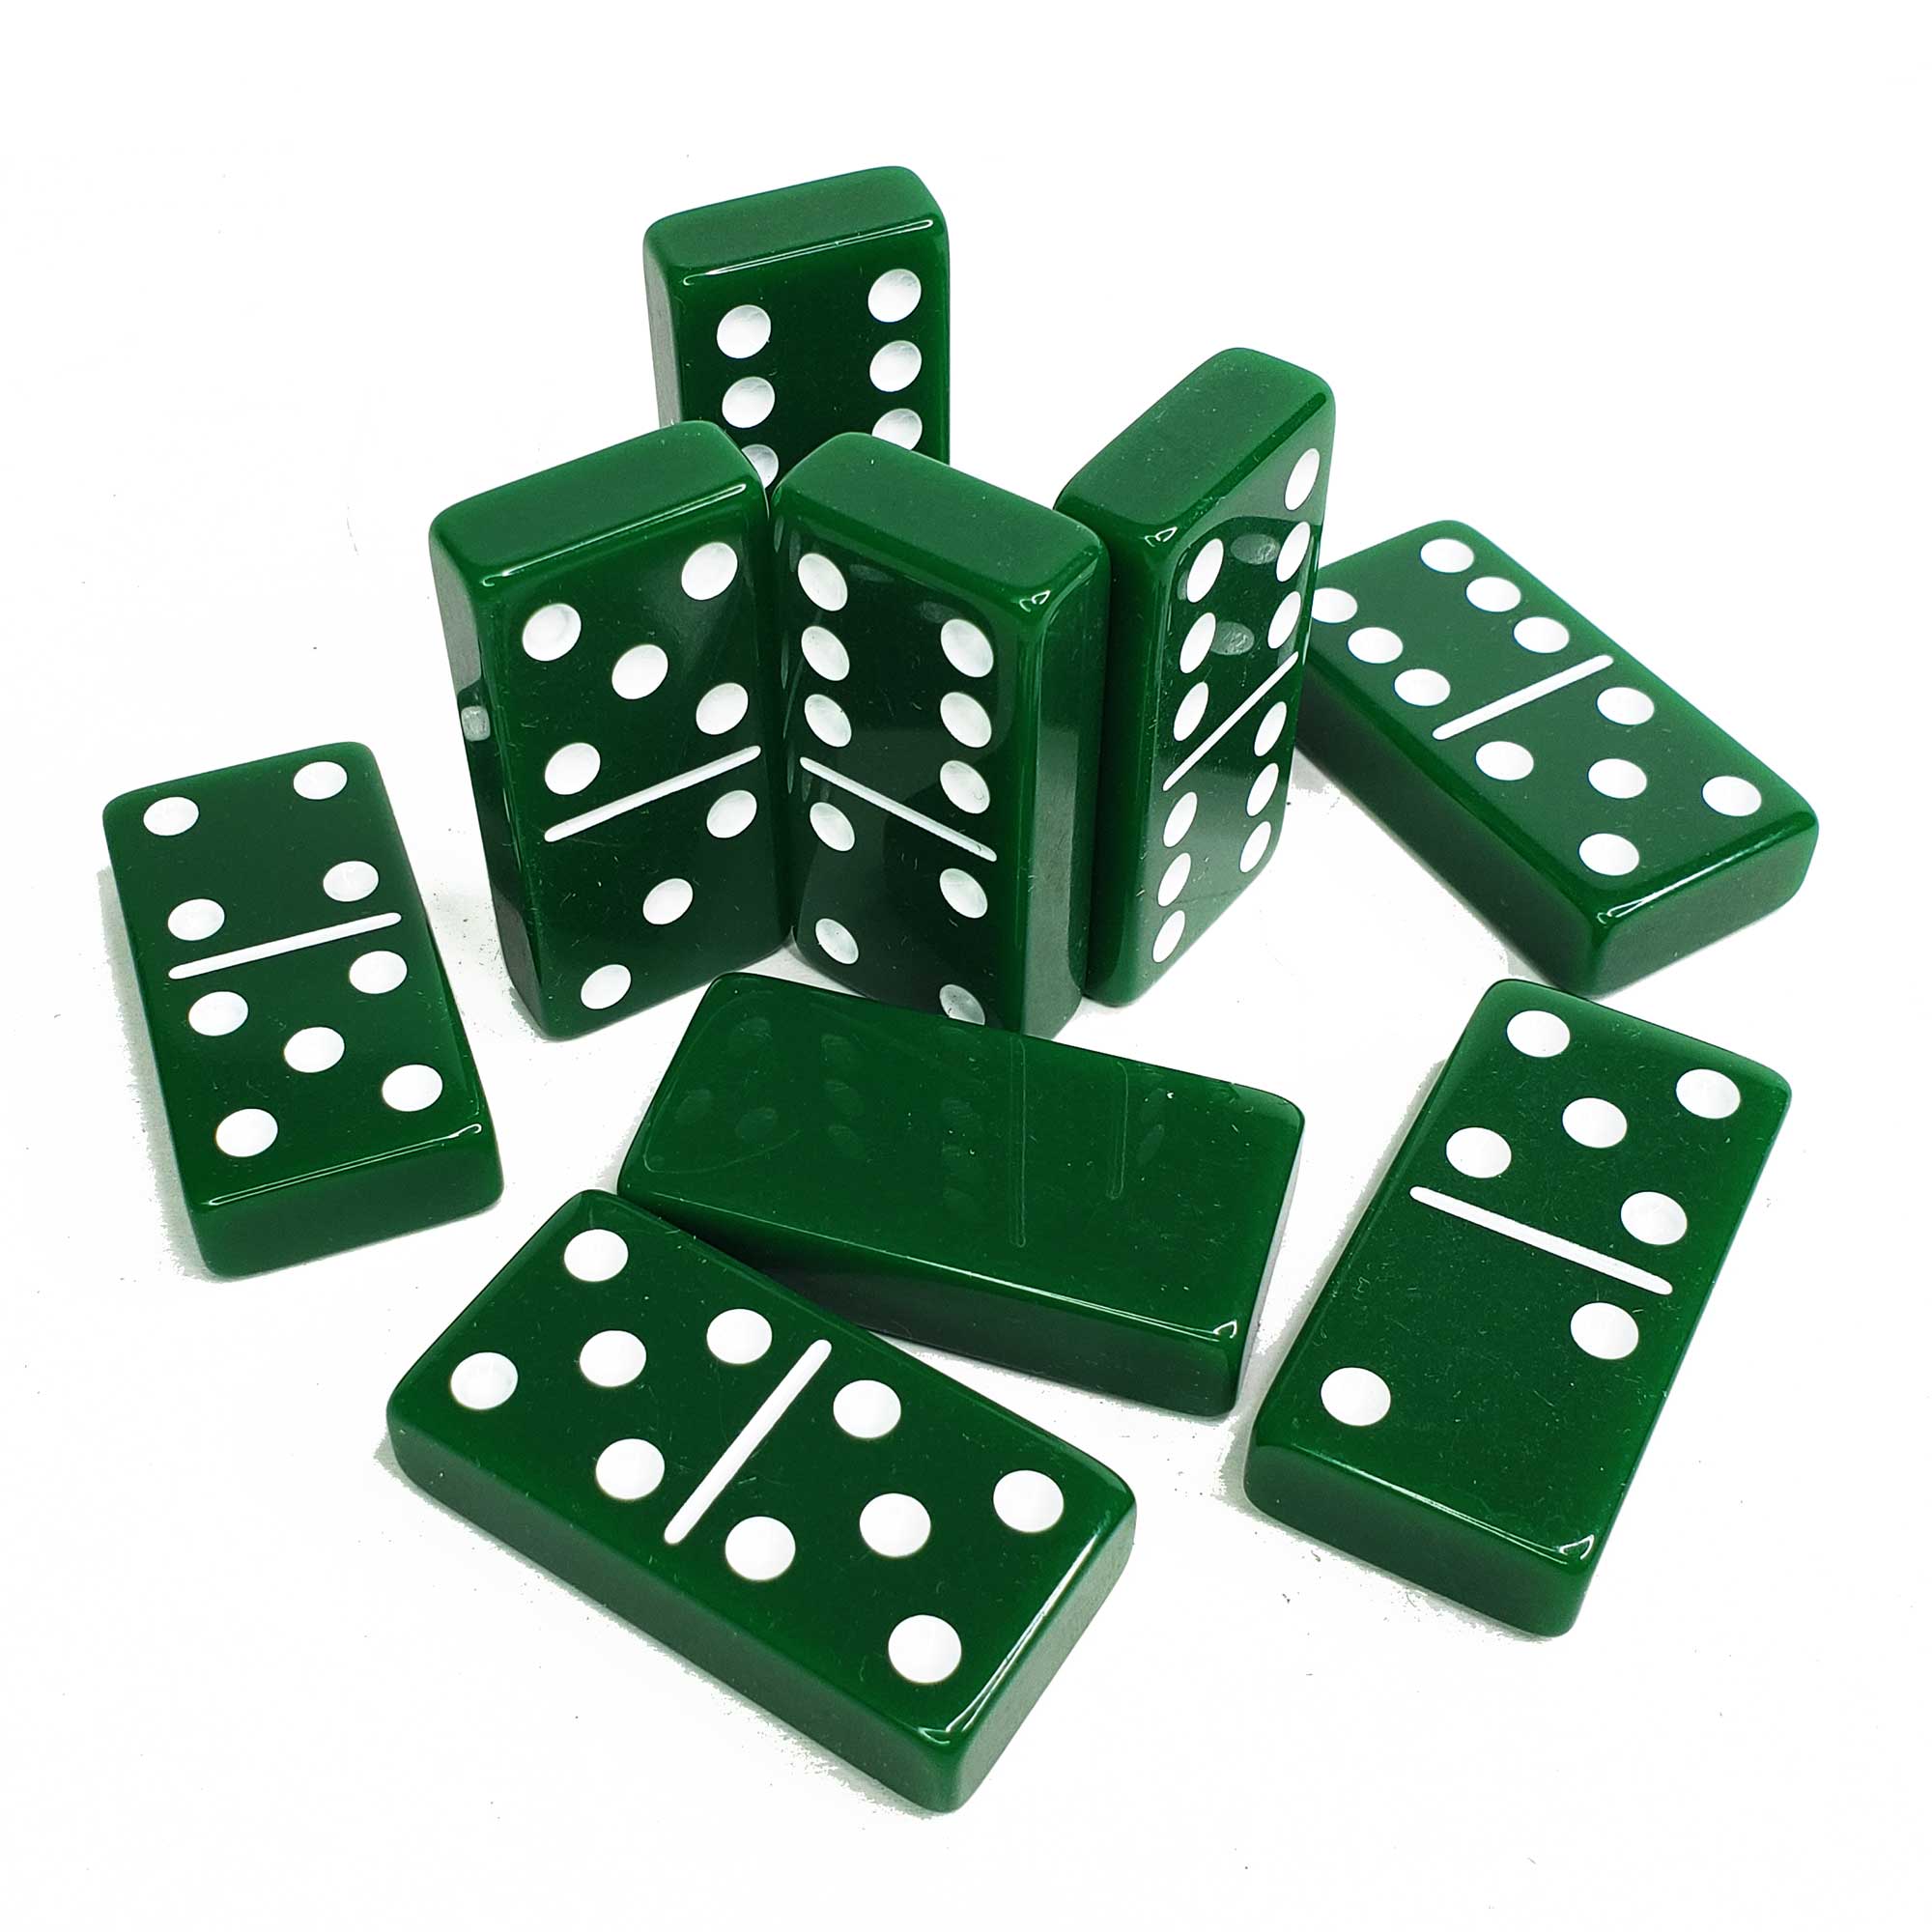 Premium ACRYLIC Double 6 JUMBO Dominoes Set Game | Green